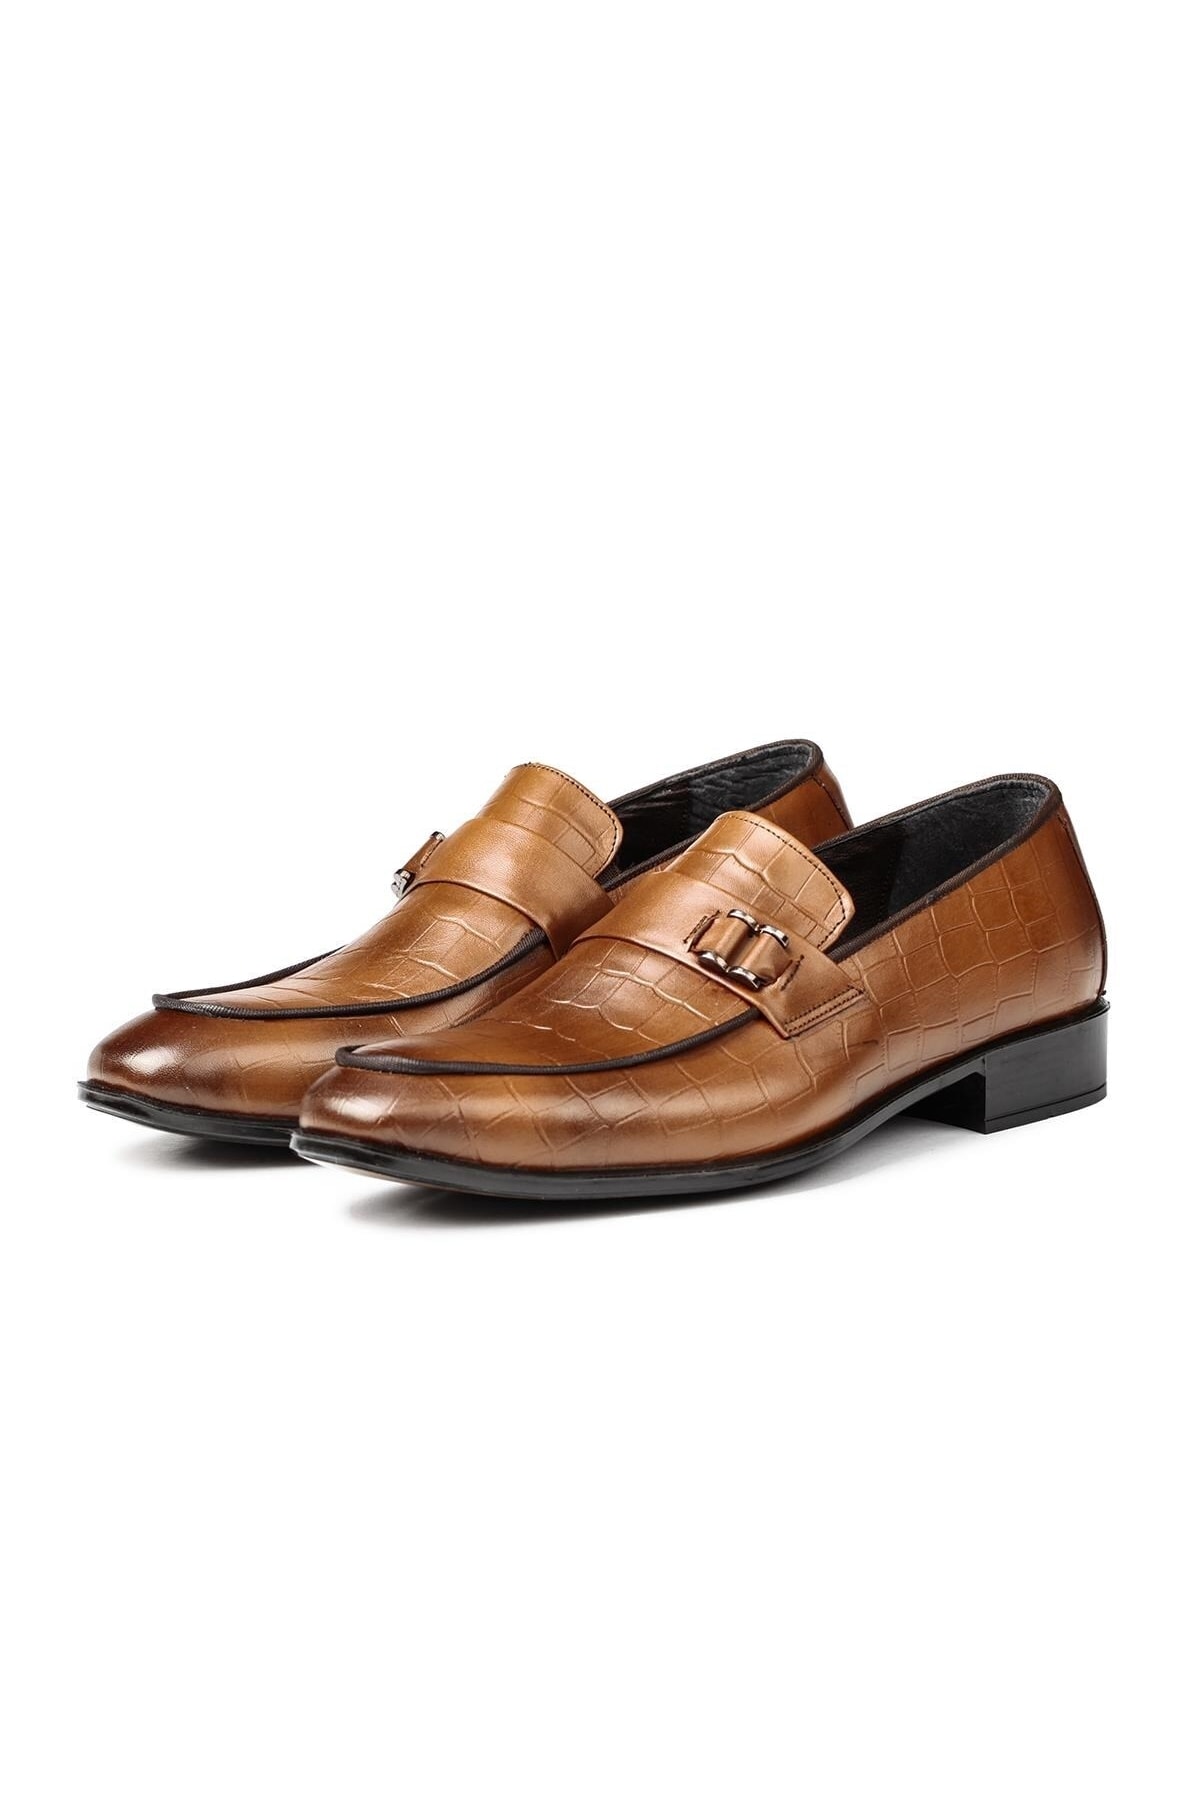 Levně Ducavelli Swank Genuine Leather Men's Classic Shoes, Loafers Classic Shoes, Loafers.